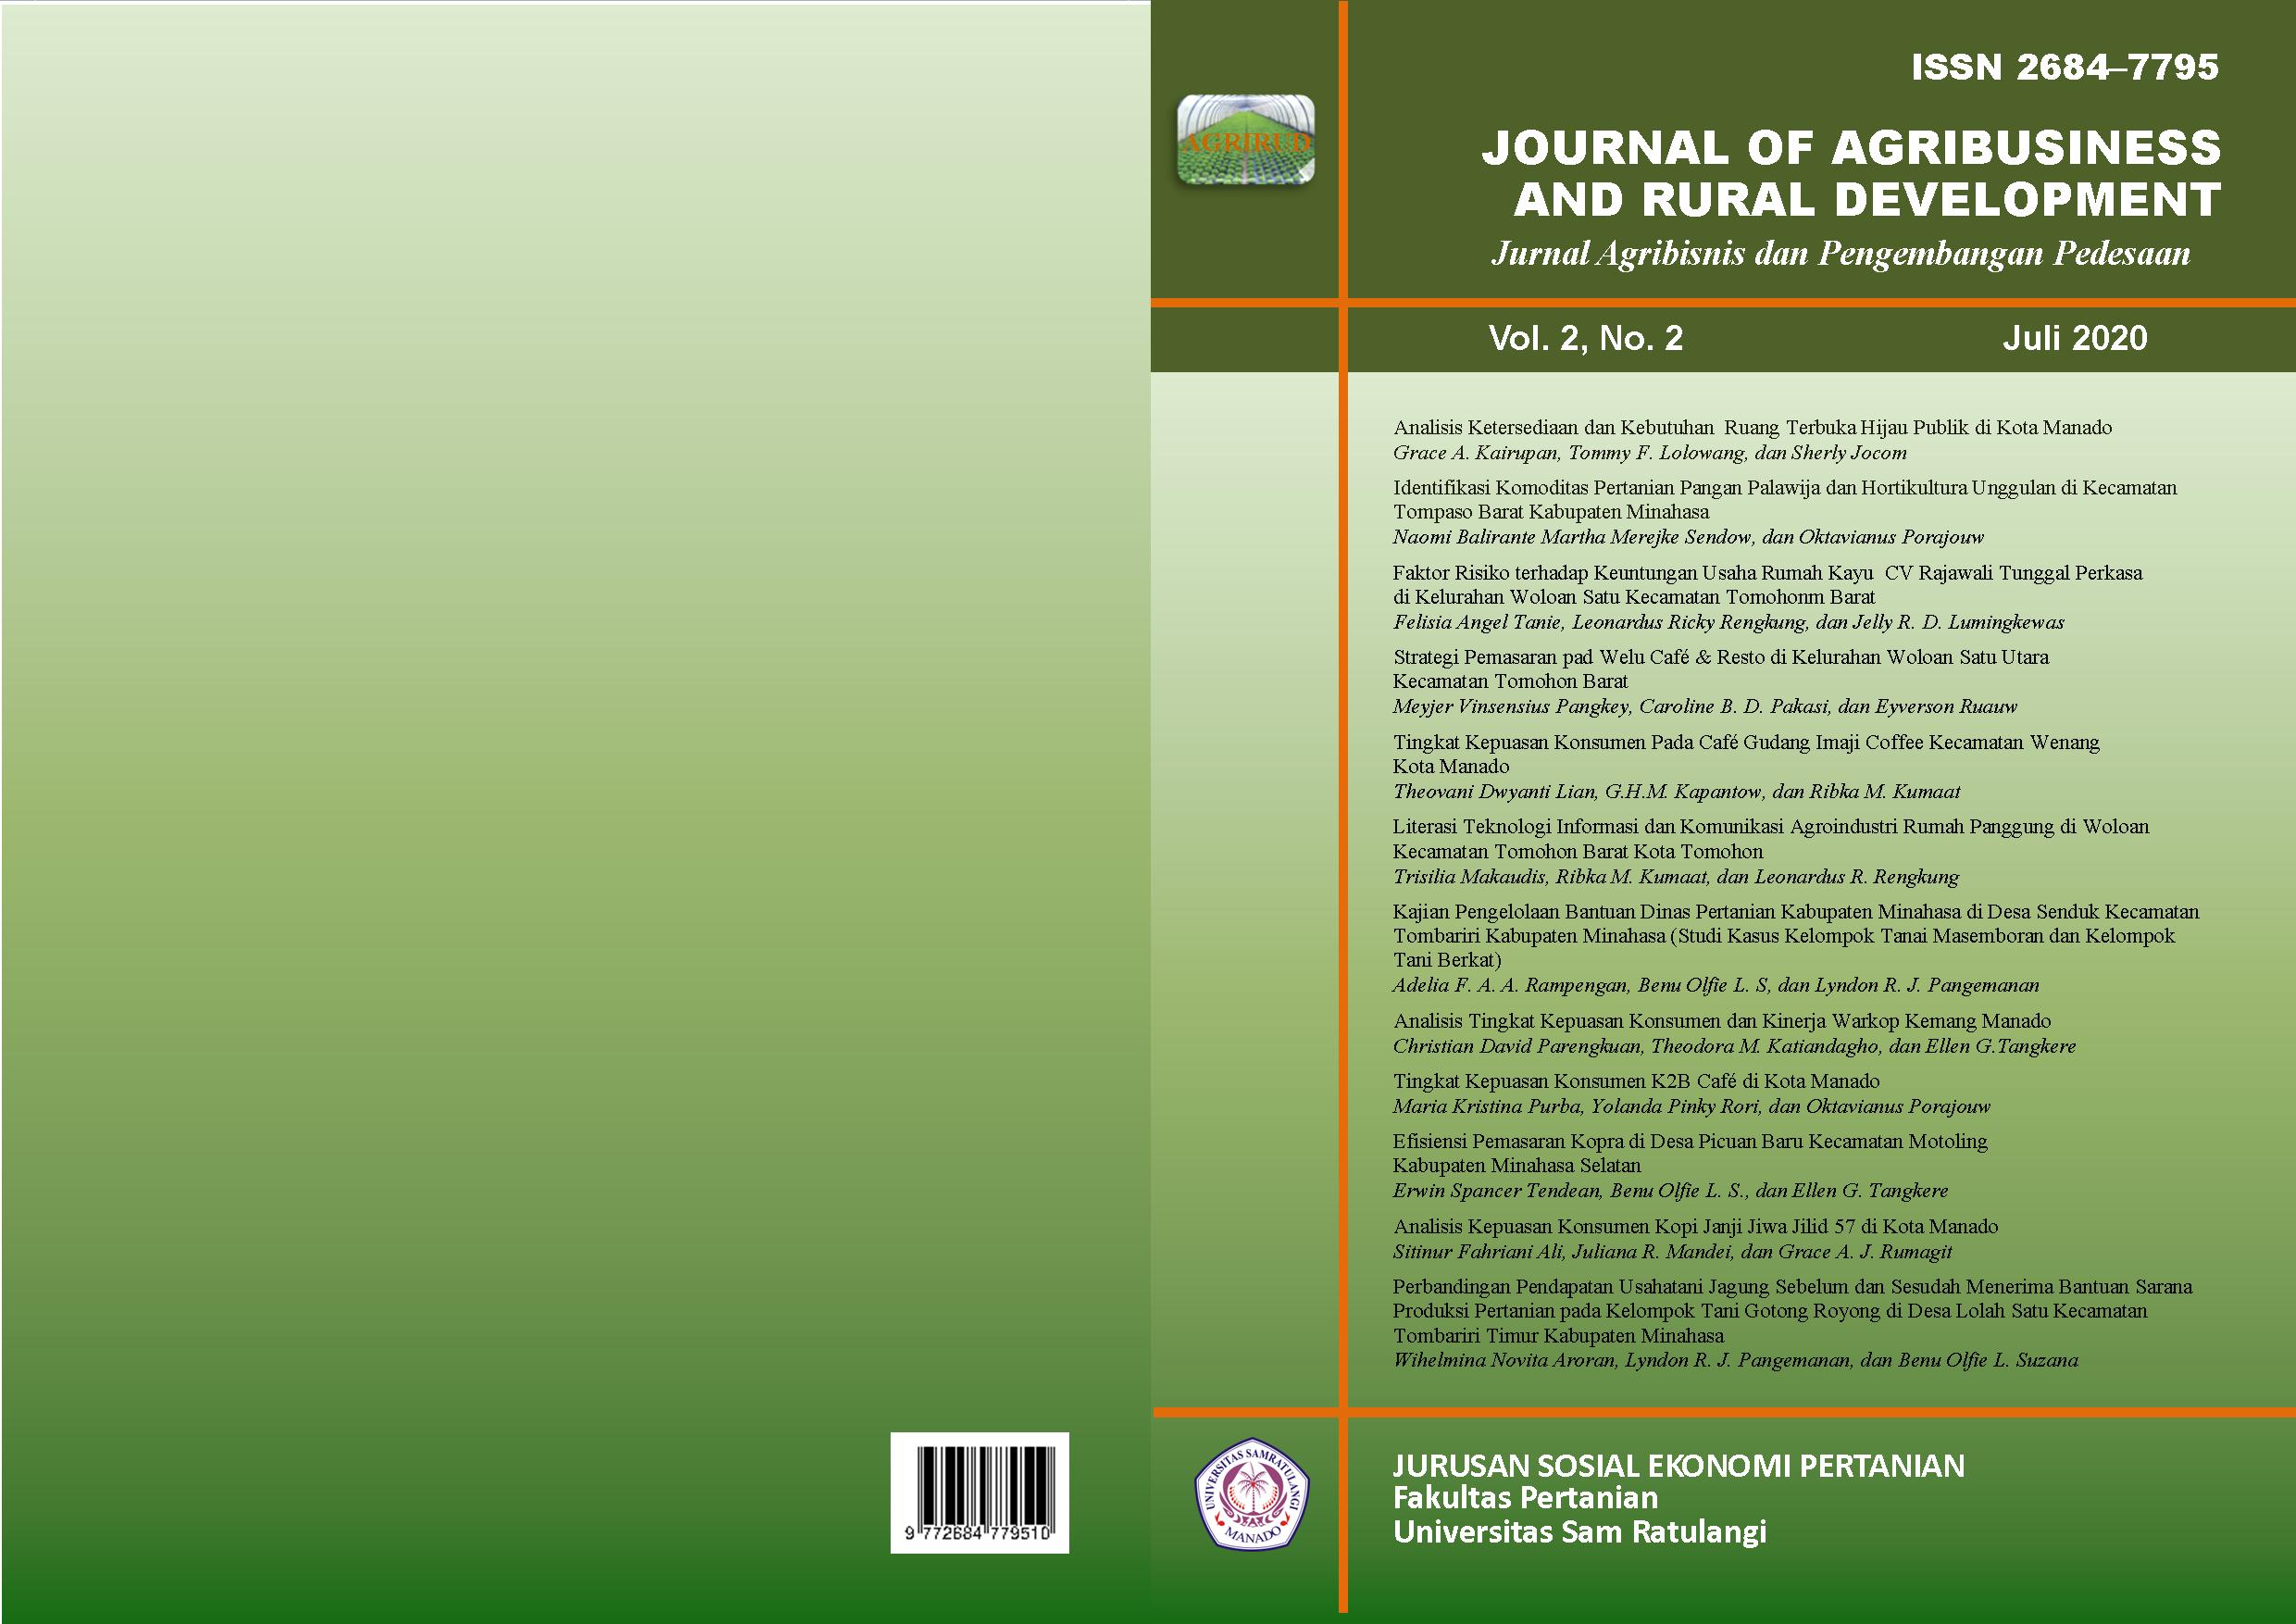 					View Vol. 2 No. 2 (2020): Journal of Agribusiness and Rural Development (Jurnal Agribisnis dan Pengembangan Pedesaan) - Juli 2020
				